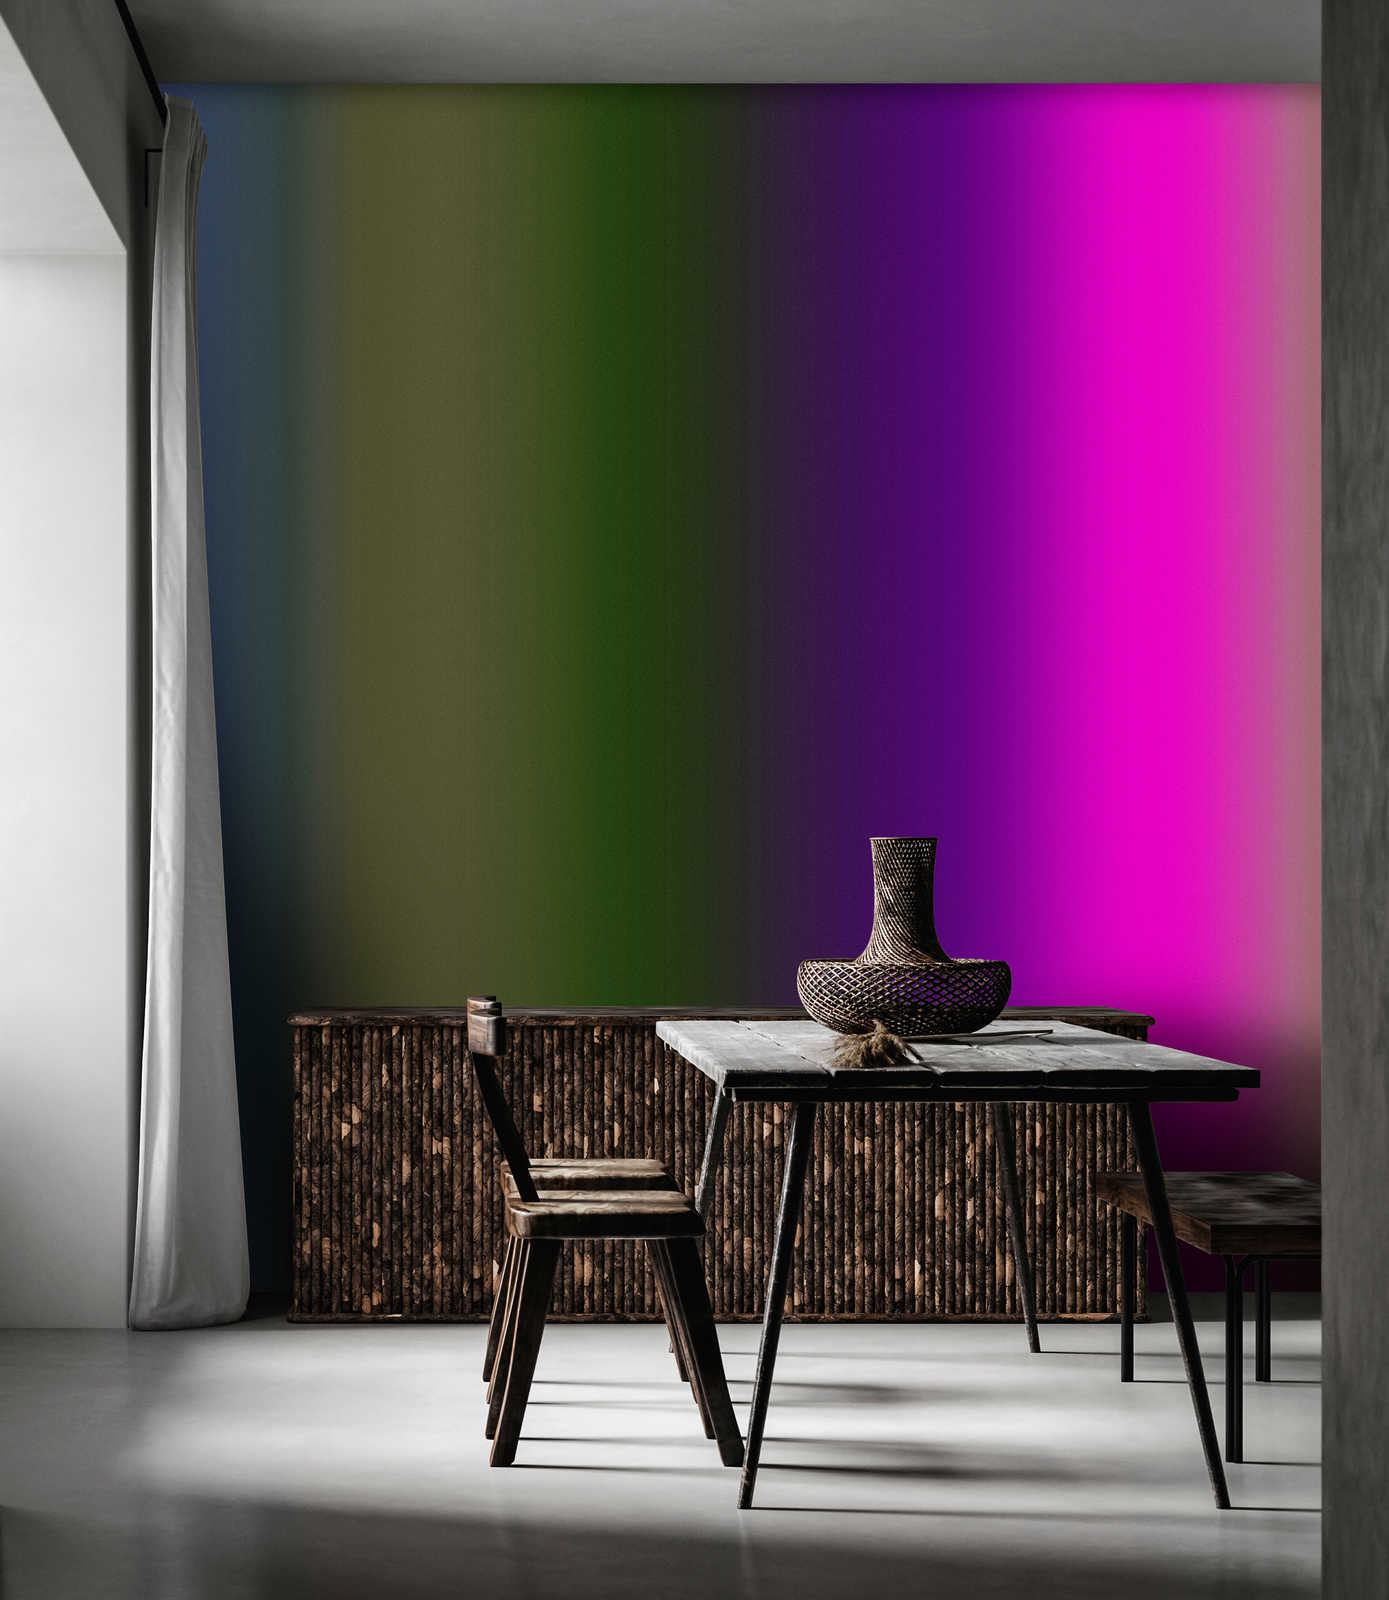             Over the Rainbow 3 - papier peint couleur spectre avec rose néon
        